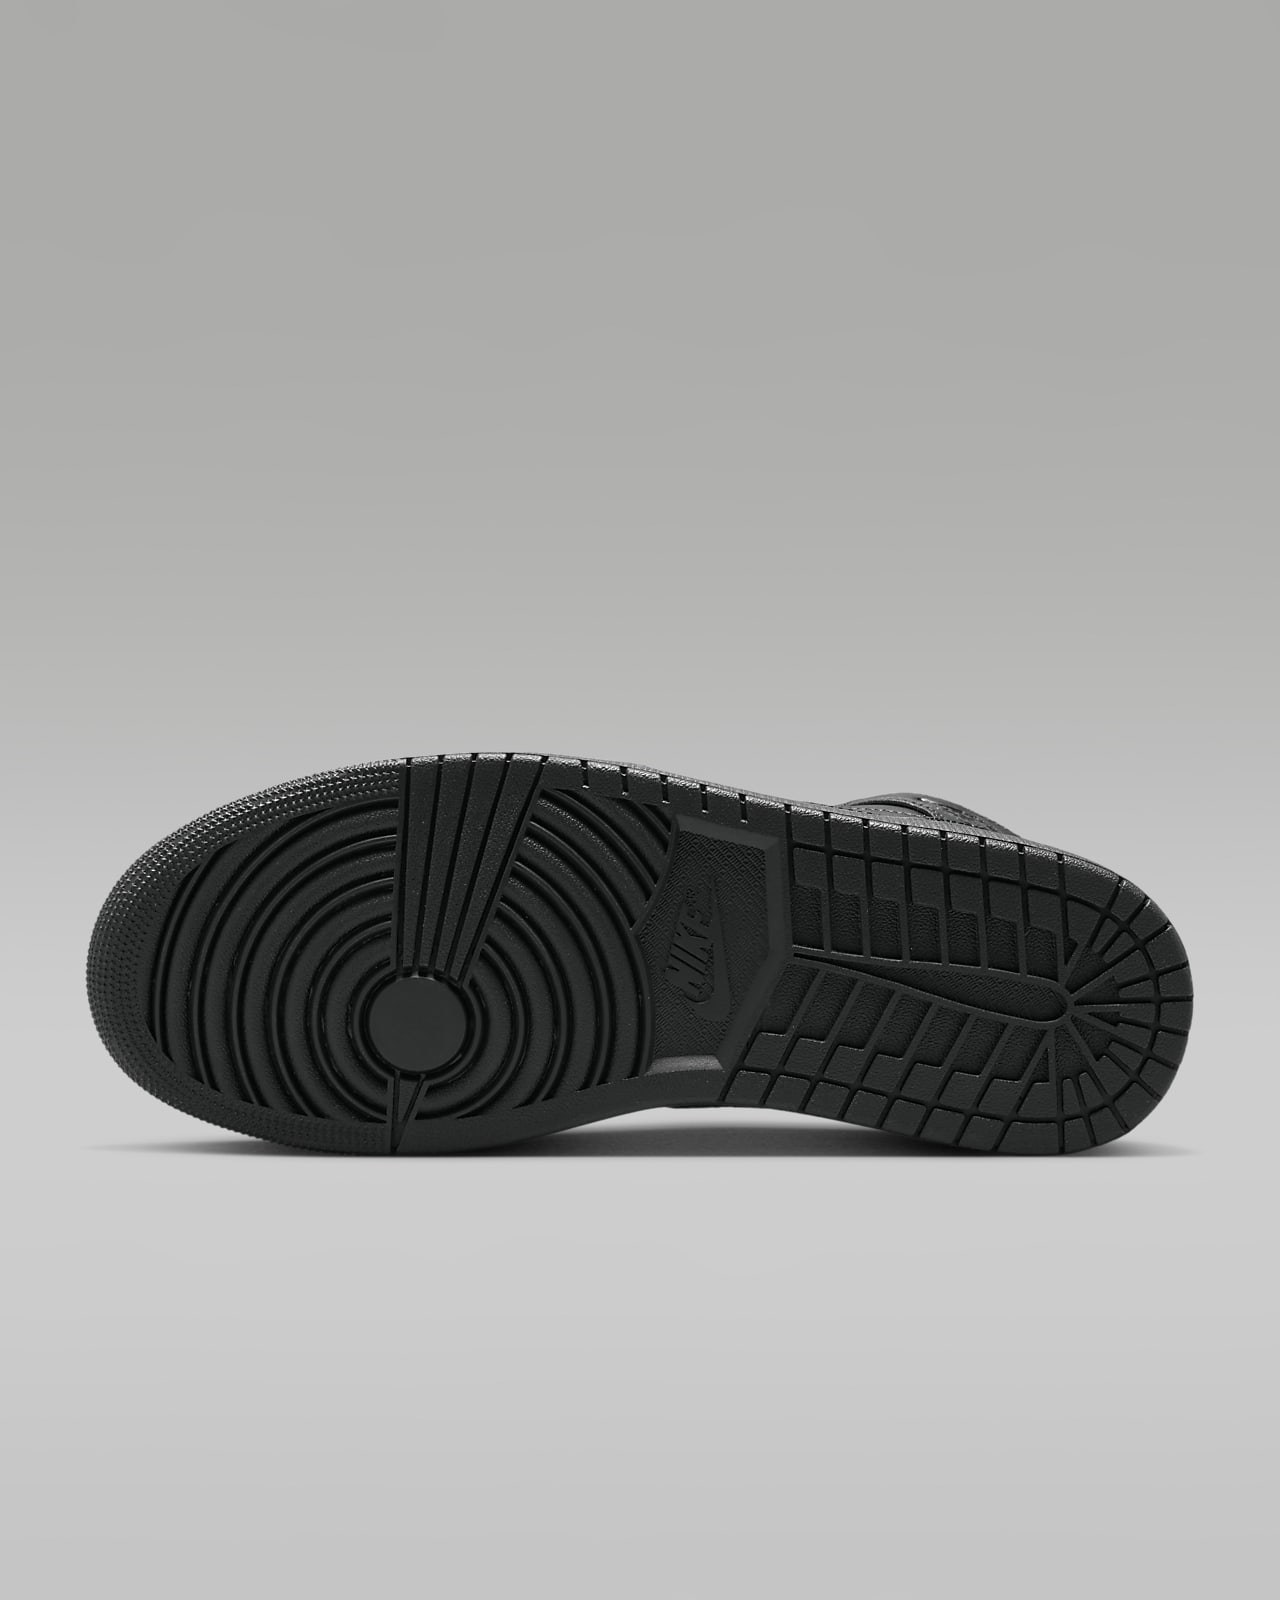 ekstensivt Forberedende navn Vugge Air Jordan 1 Mid Shoes. Nike.com